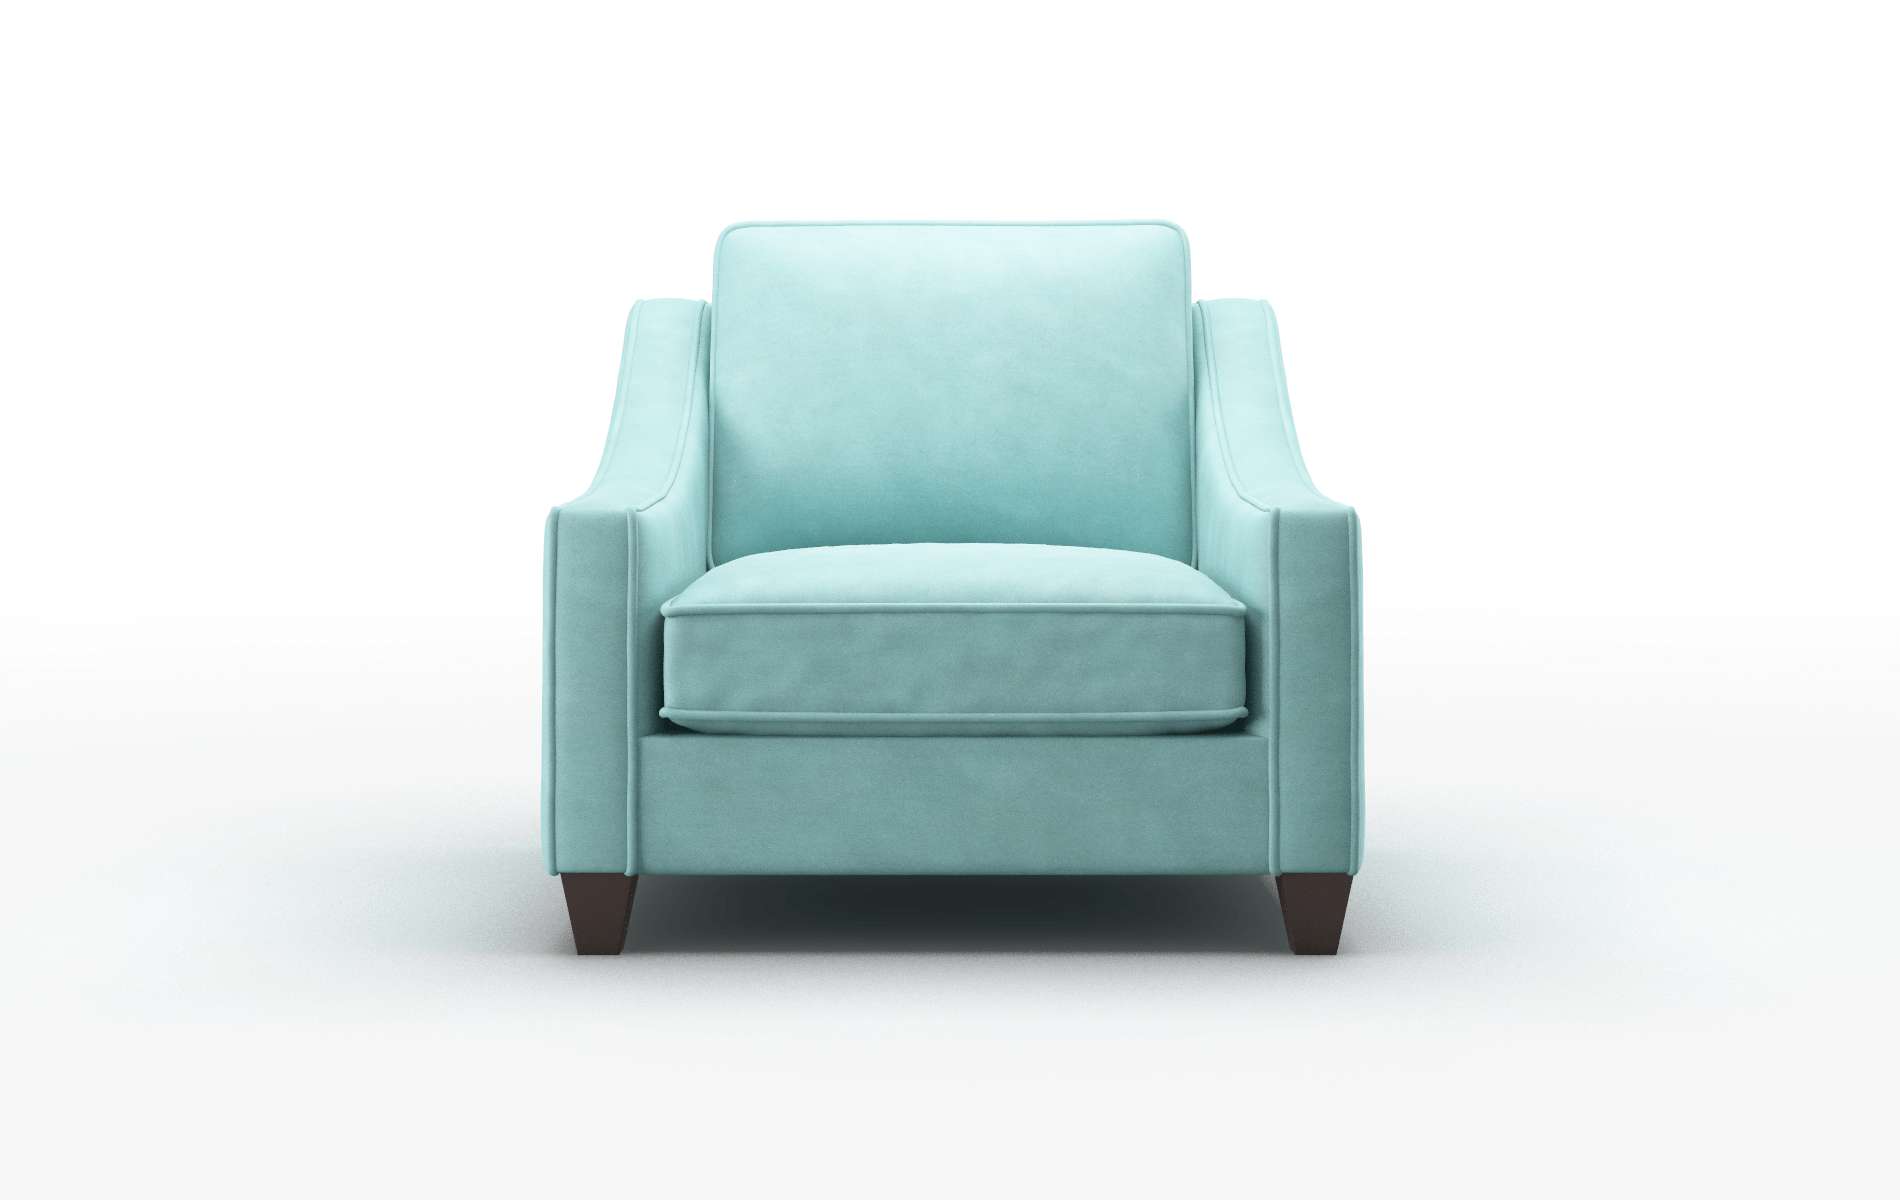 Sanda Curious Turquoise Chair espresso legs 1